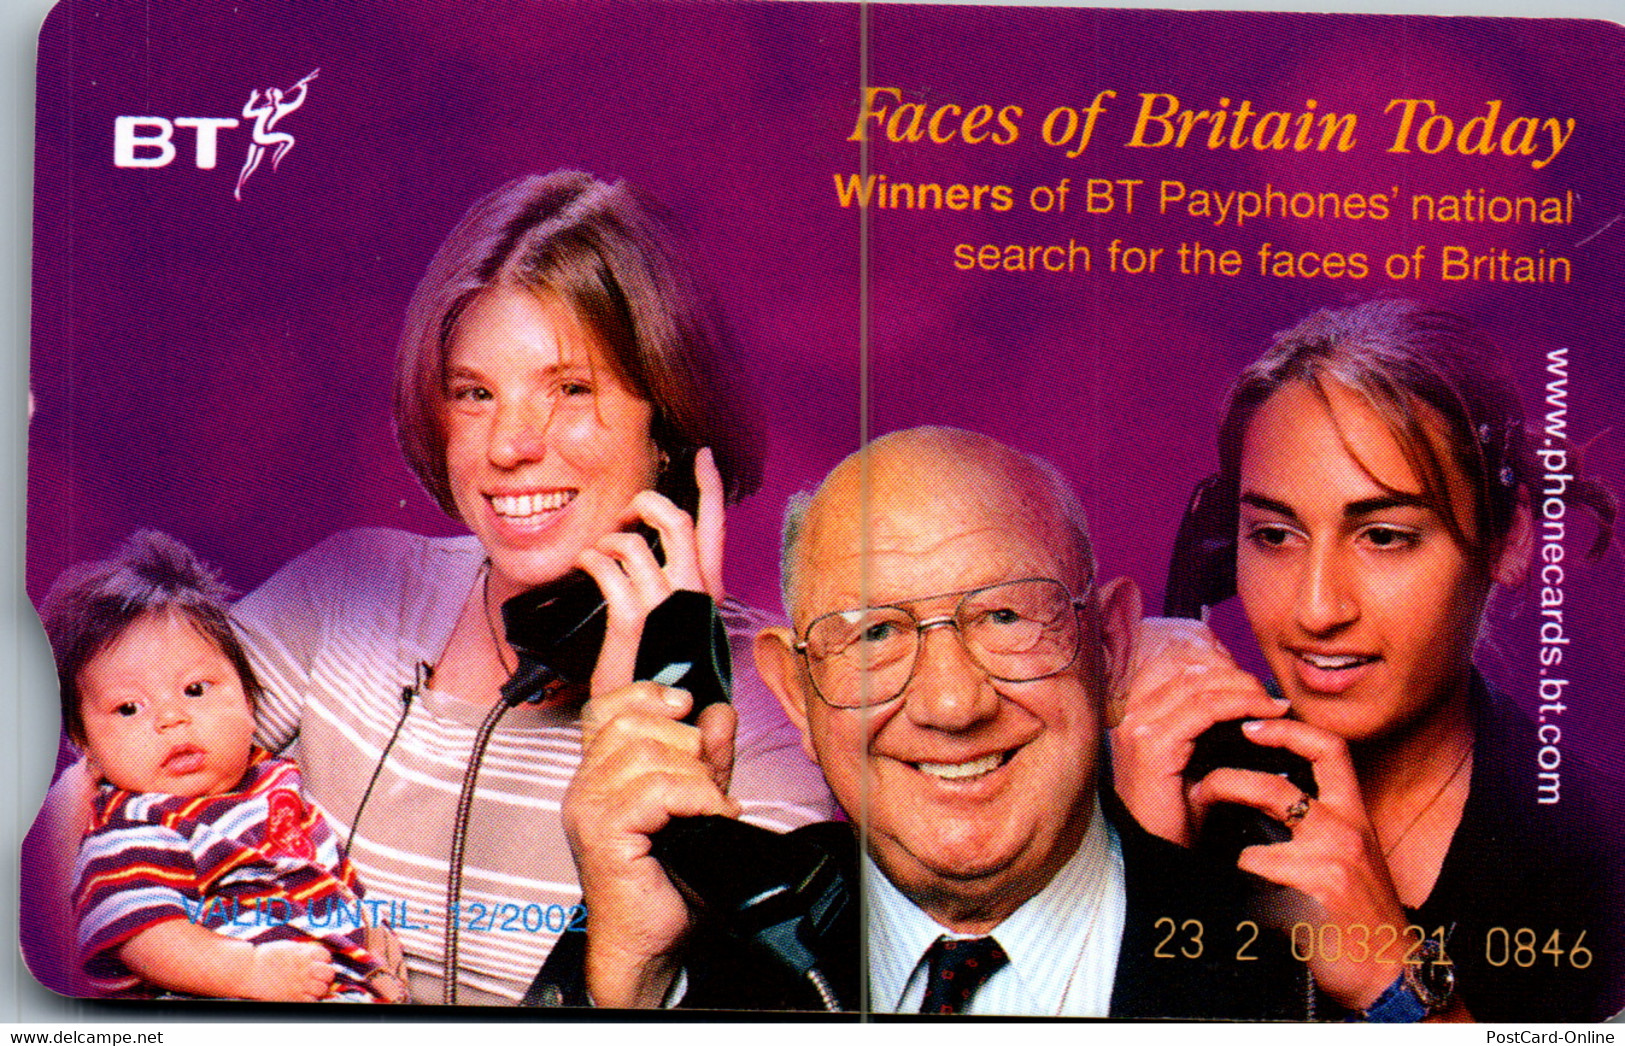 31183 - Großbritannien - BT , Faces Of Britain Today - BT General